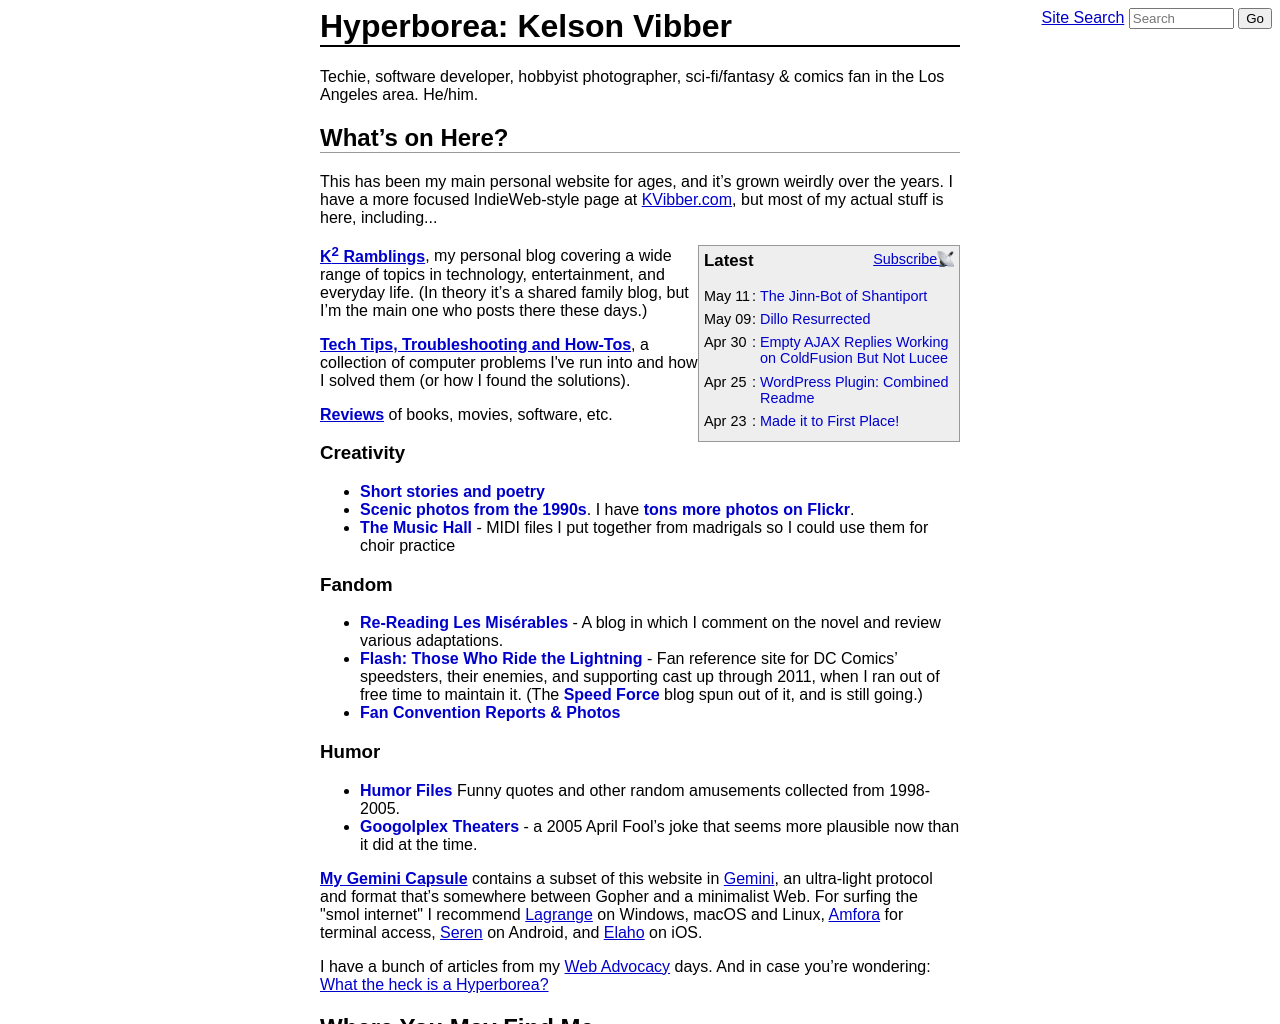 hyperborea.org